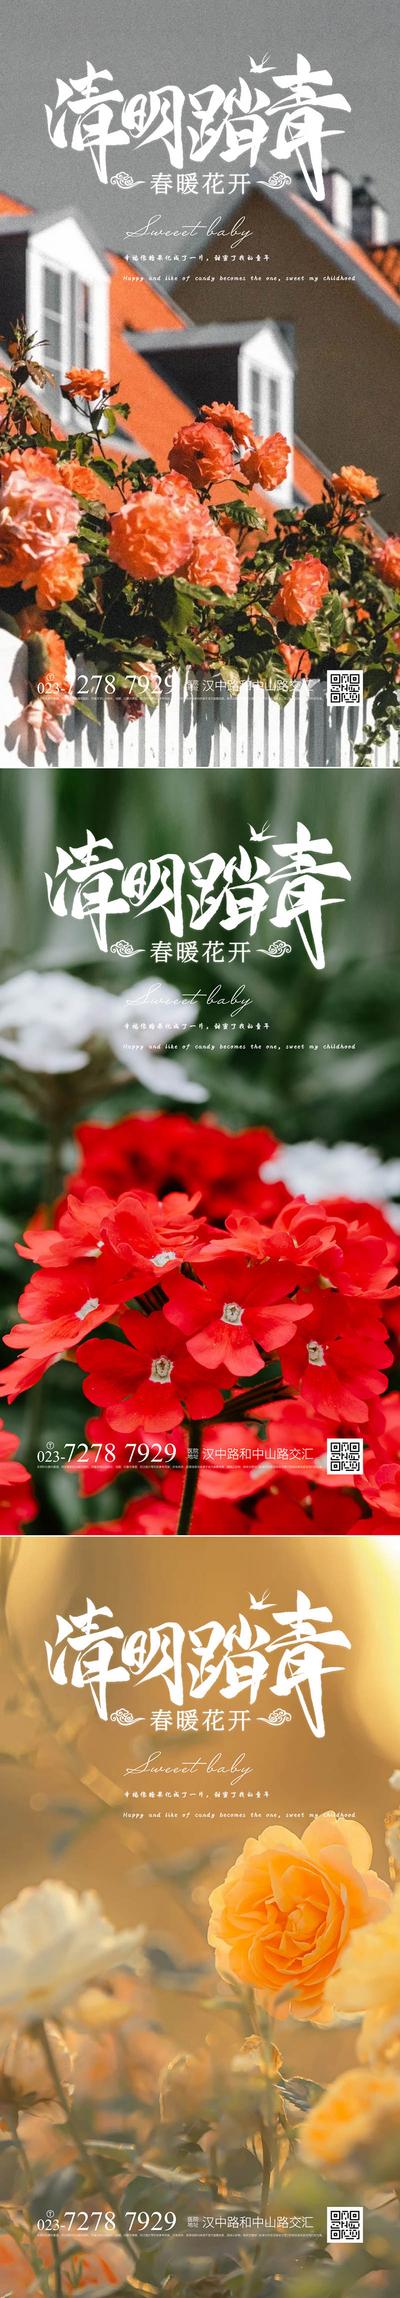 南门网 广告 海报 中国传统节日 清明节 鲜花 缅怀